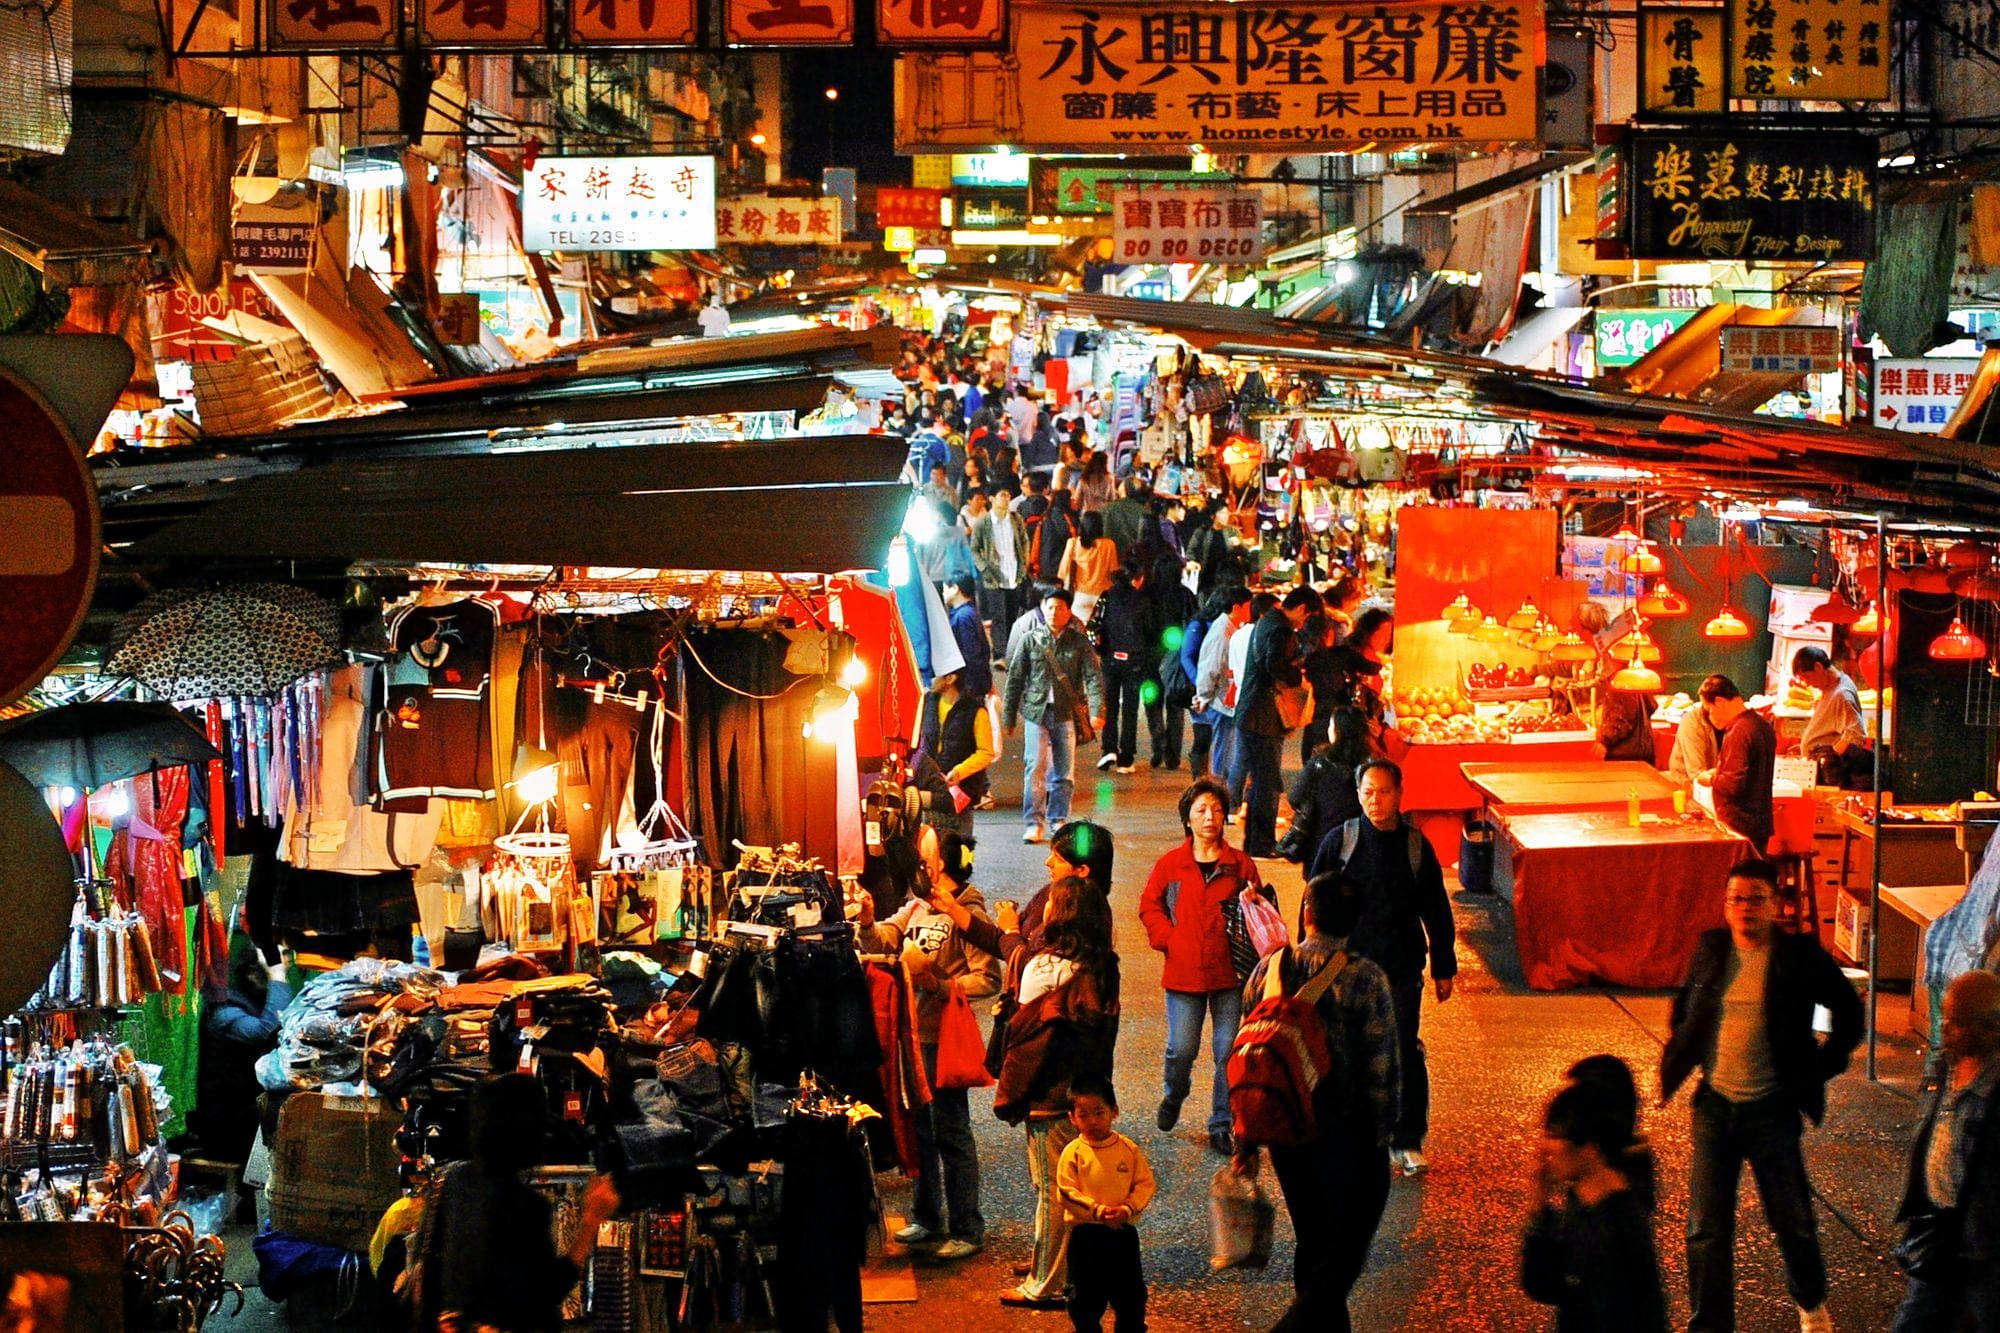 Kuta Night Market Overview